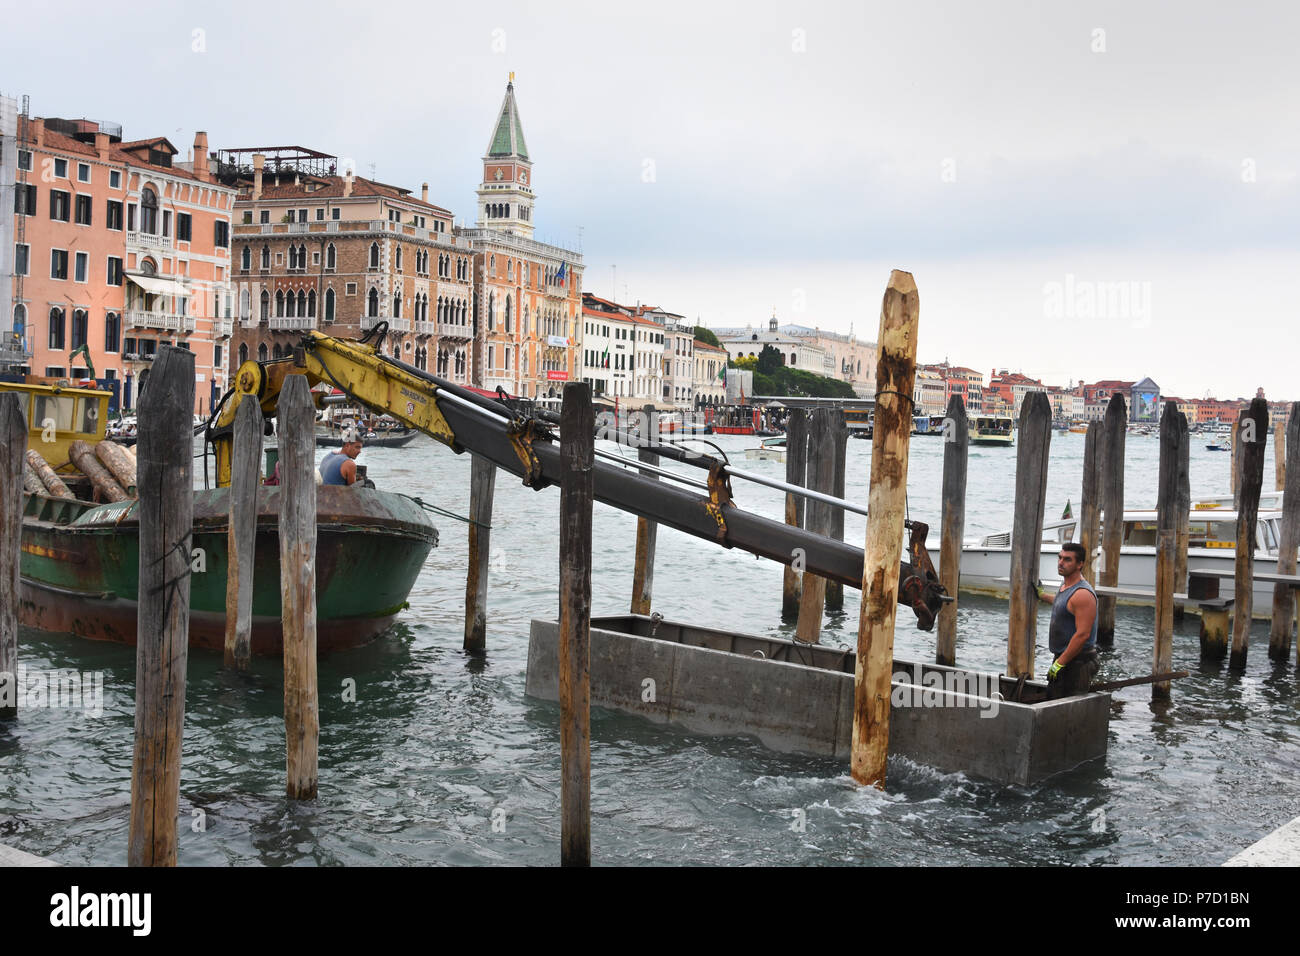 Venise, Italie, Venise, l'italien, pas tout à fait prêt encore 2018 Banque D'Images